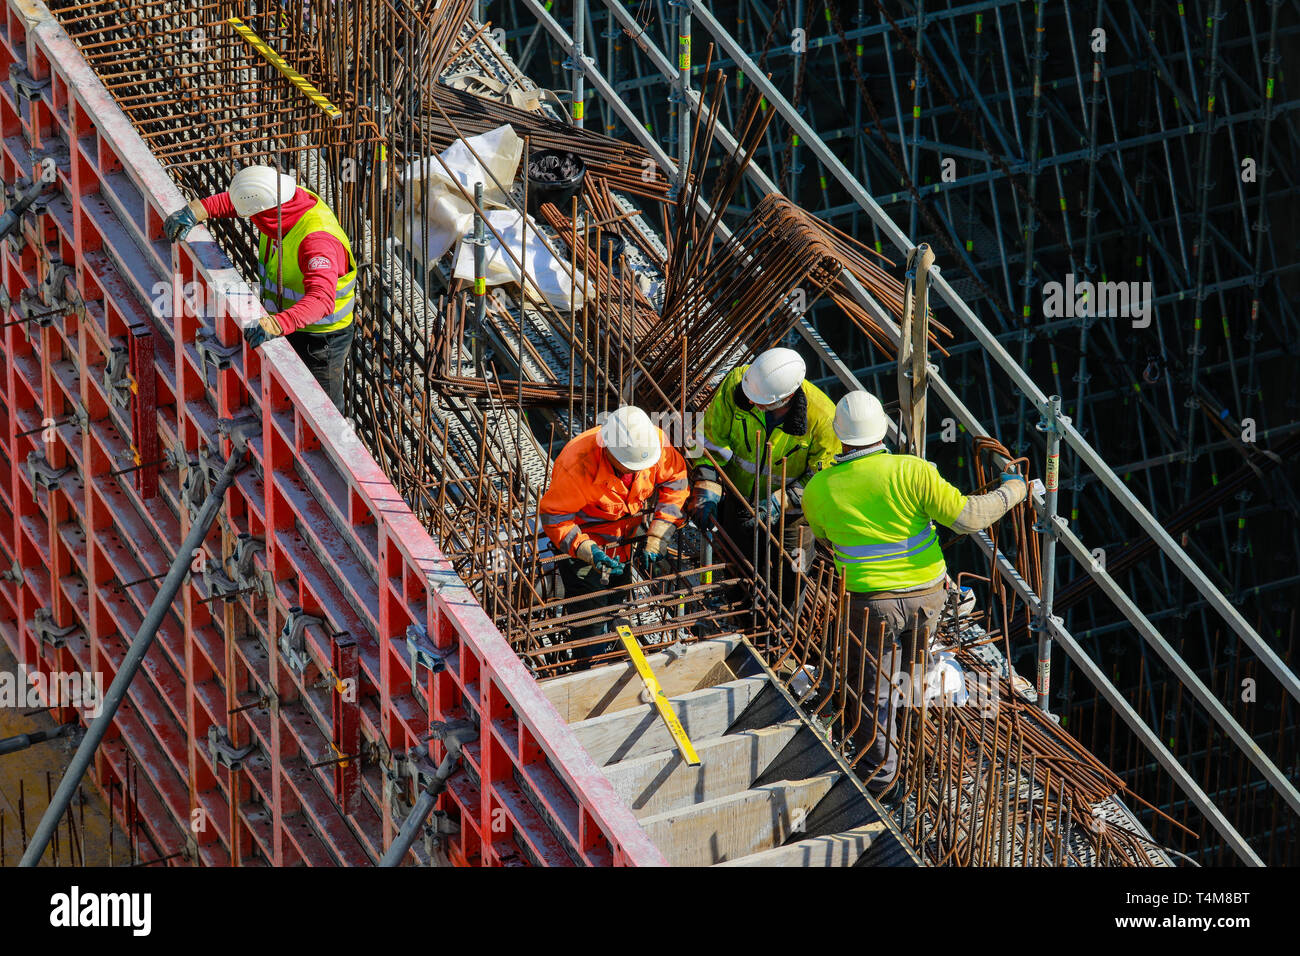 Germany - Construction industry, construction workers work on a construction site. Deutschland - Bauwirtschaft, Bauarbeiter arbeiten auf einer Baustel Stock Photo